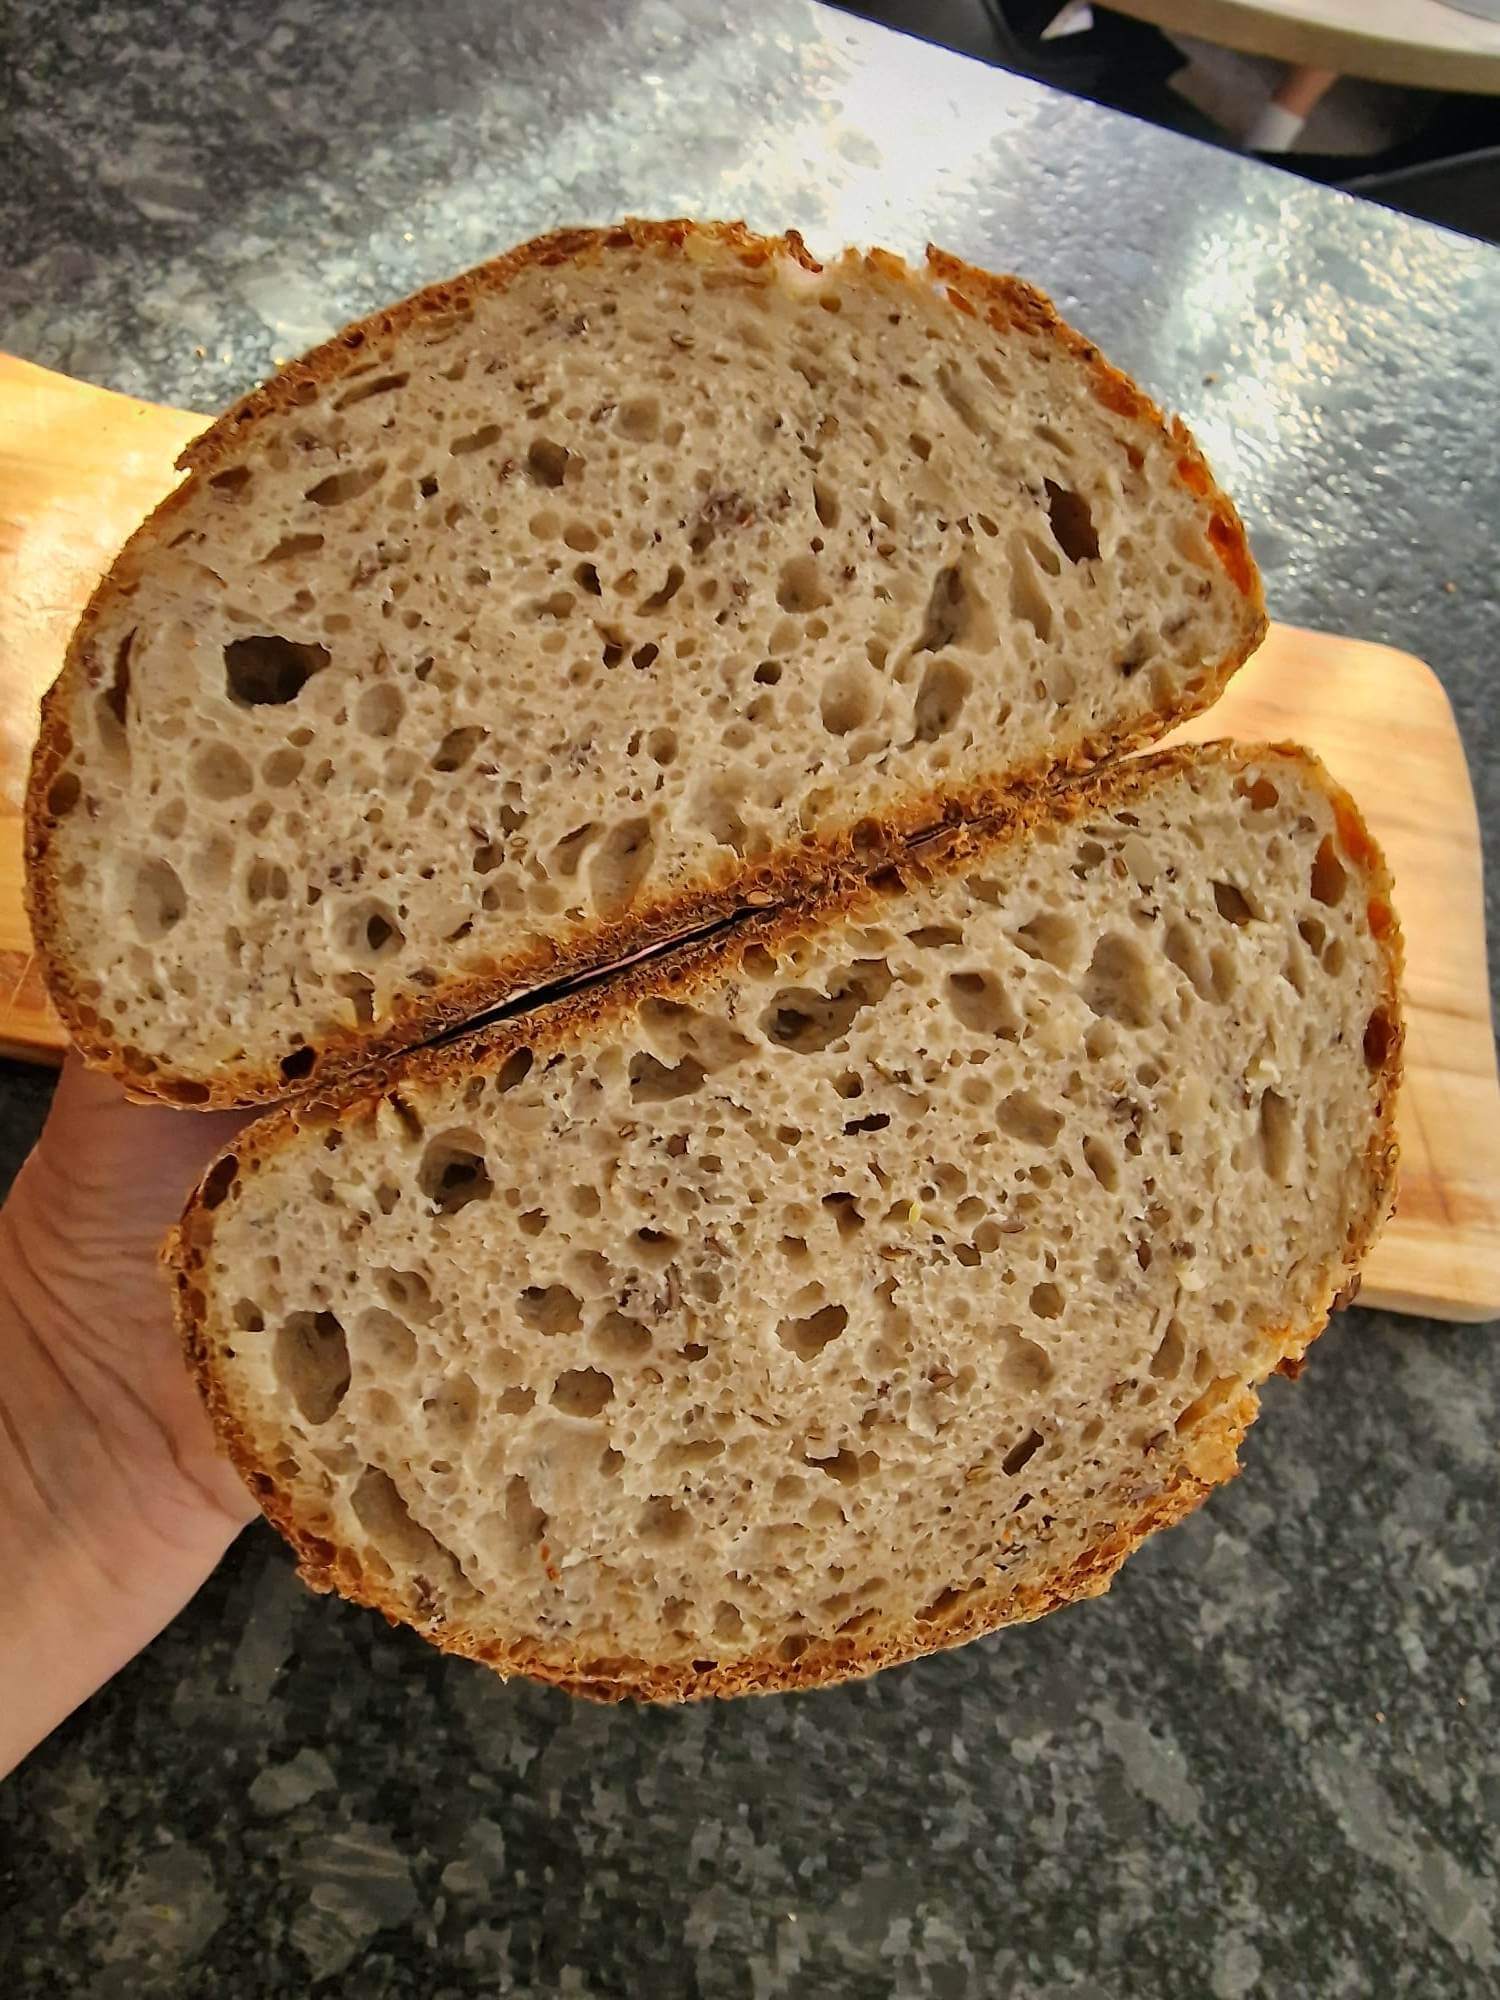 Pšenično-ražný chlieb